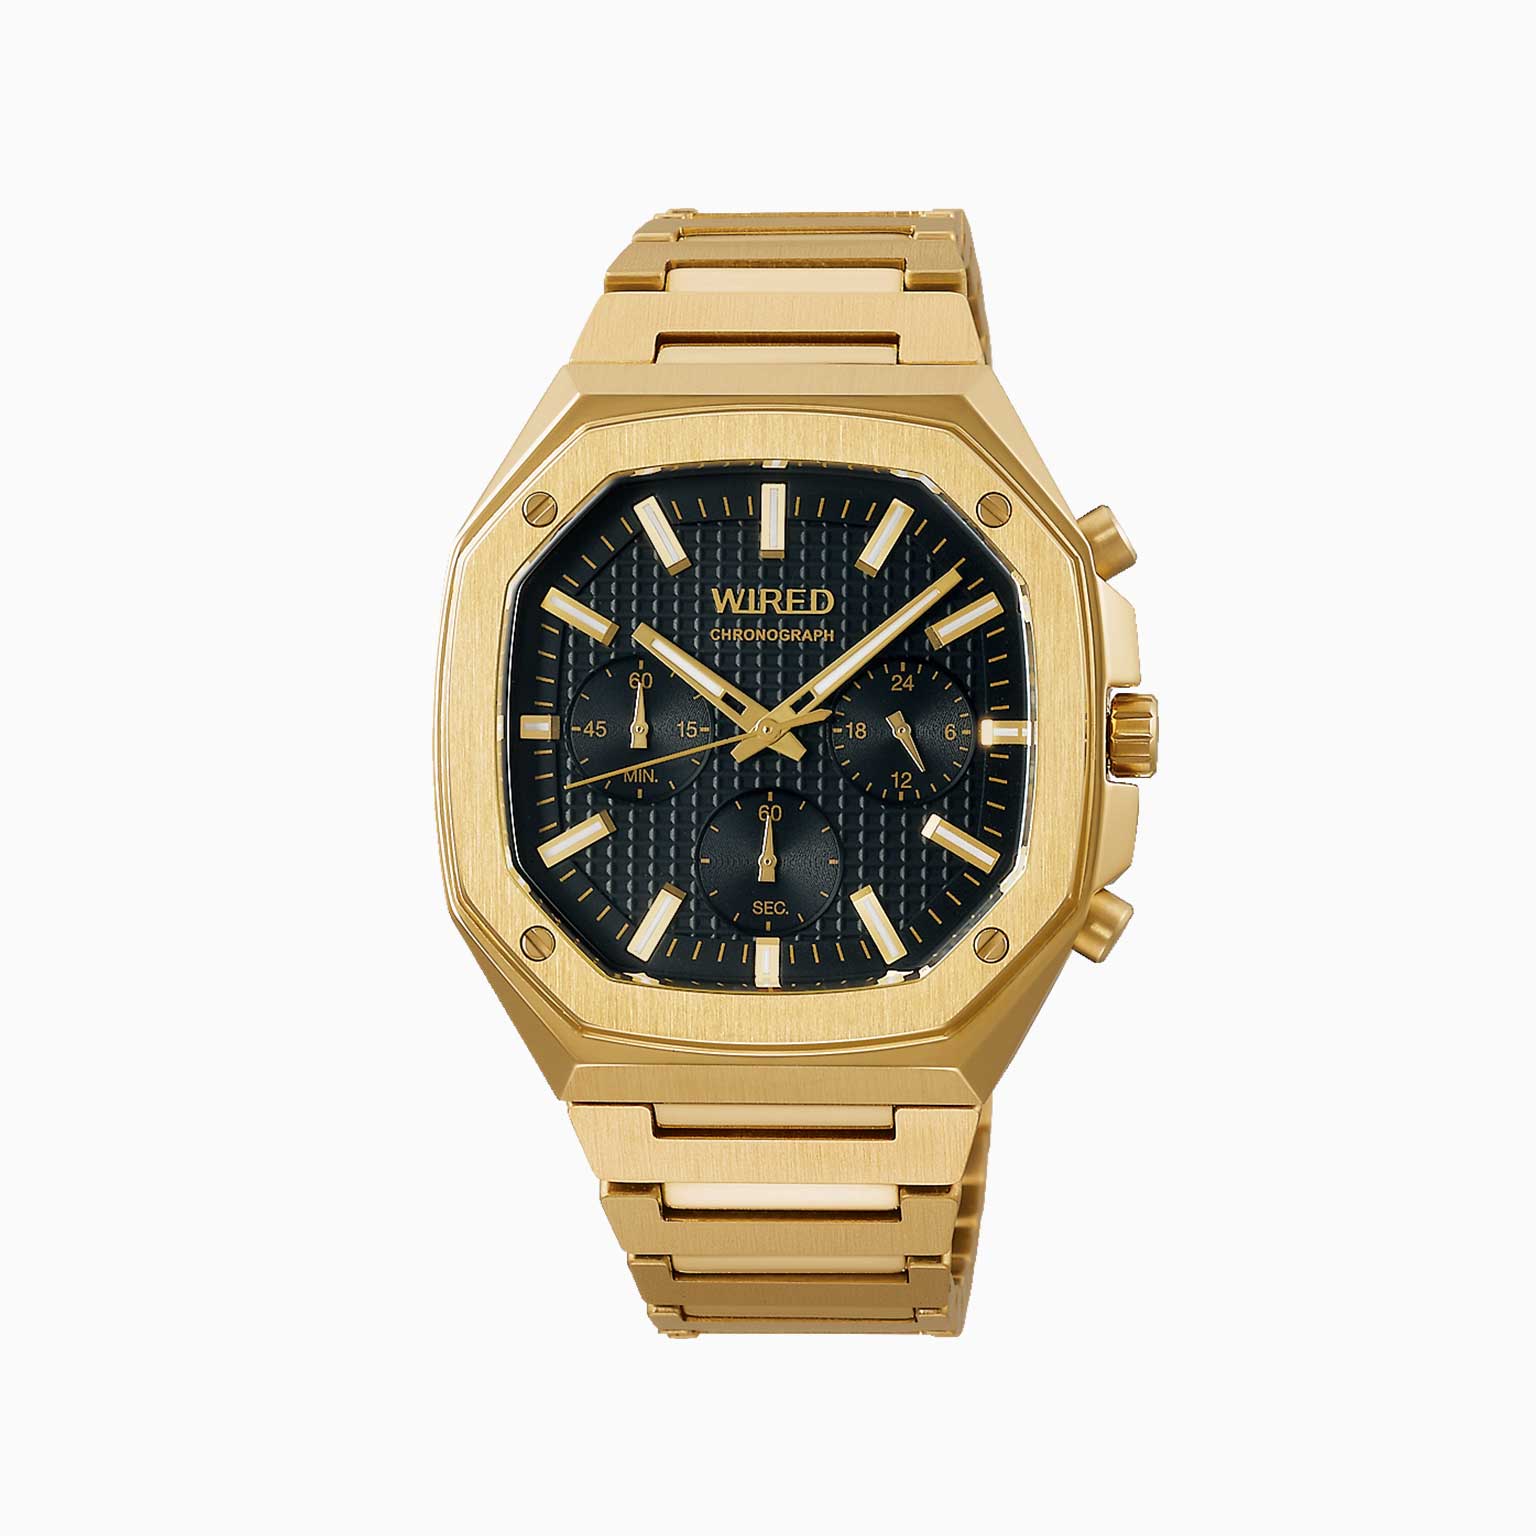 WIRED 腕時計 アークイズム デジタルモデル AGBH036 - 腕時計(デジタル)